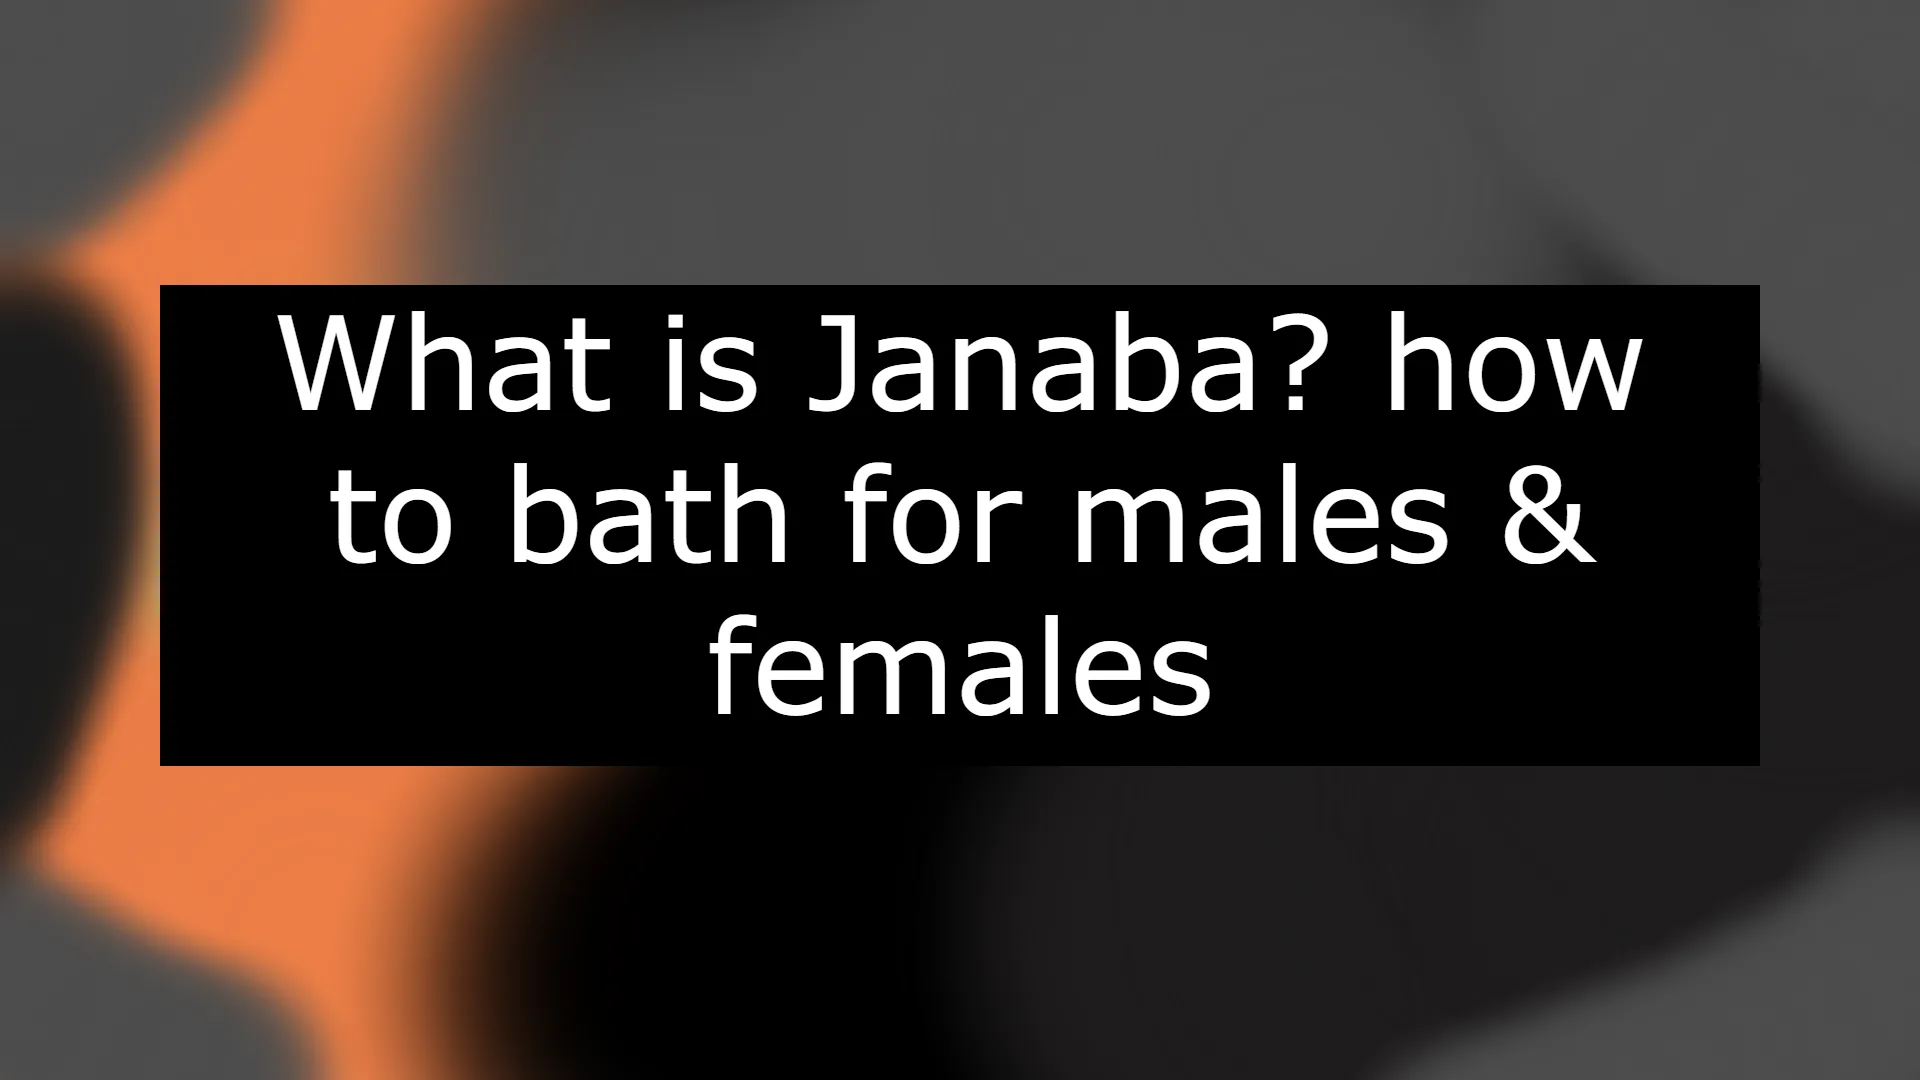 Janaba